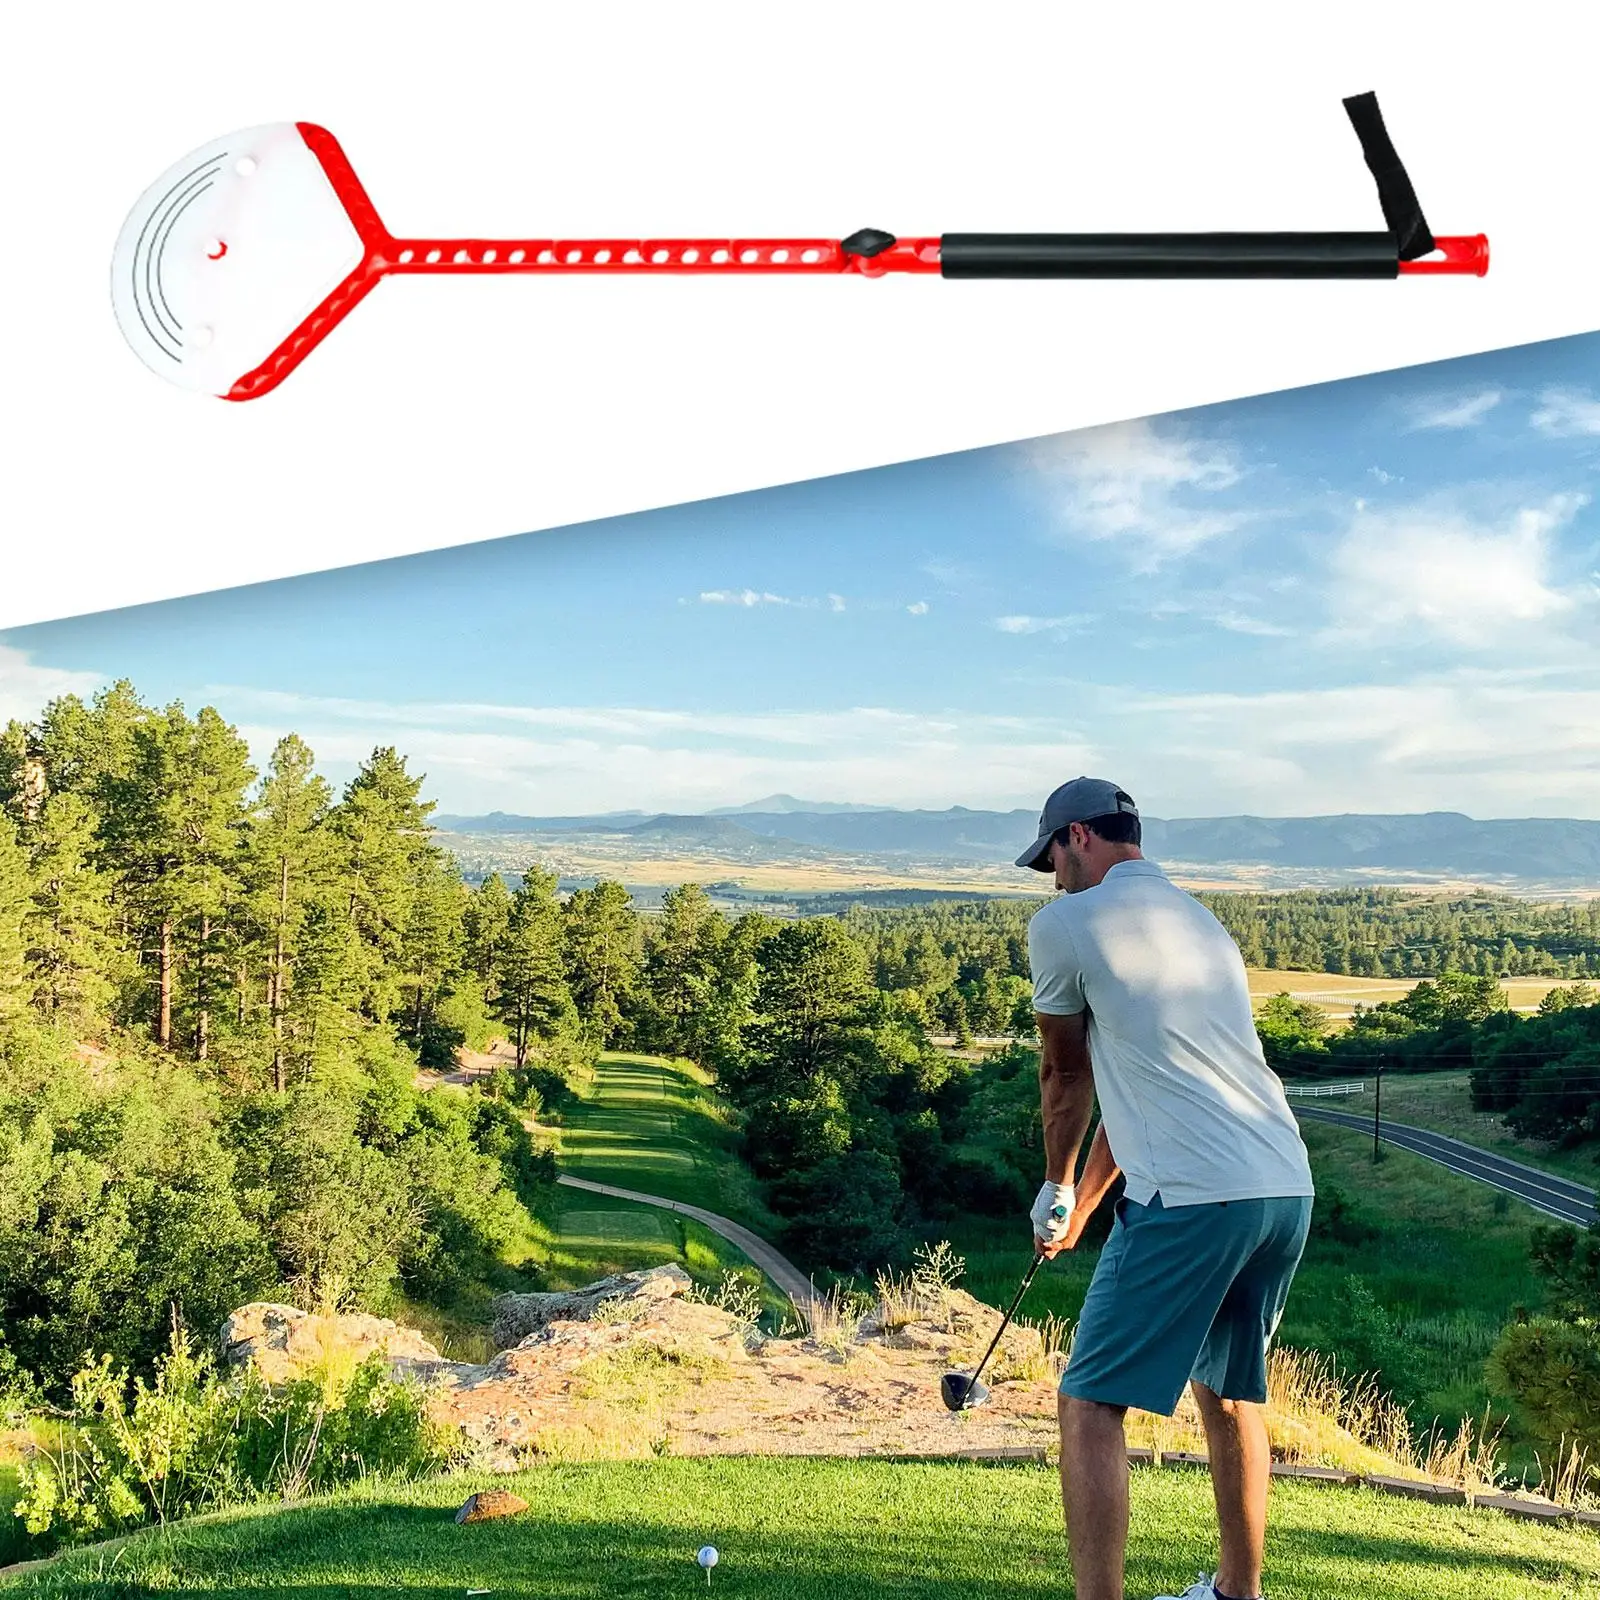 

Портативный тренажер для игры в гольф, инструмент для тренировок на открытом воздухе, аксессуары для гольфа